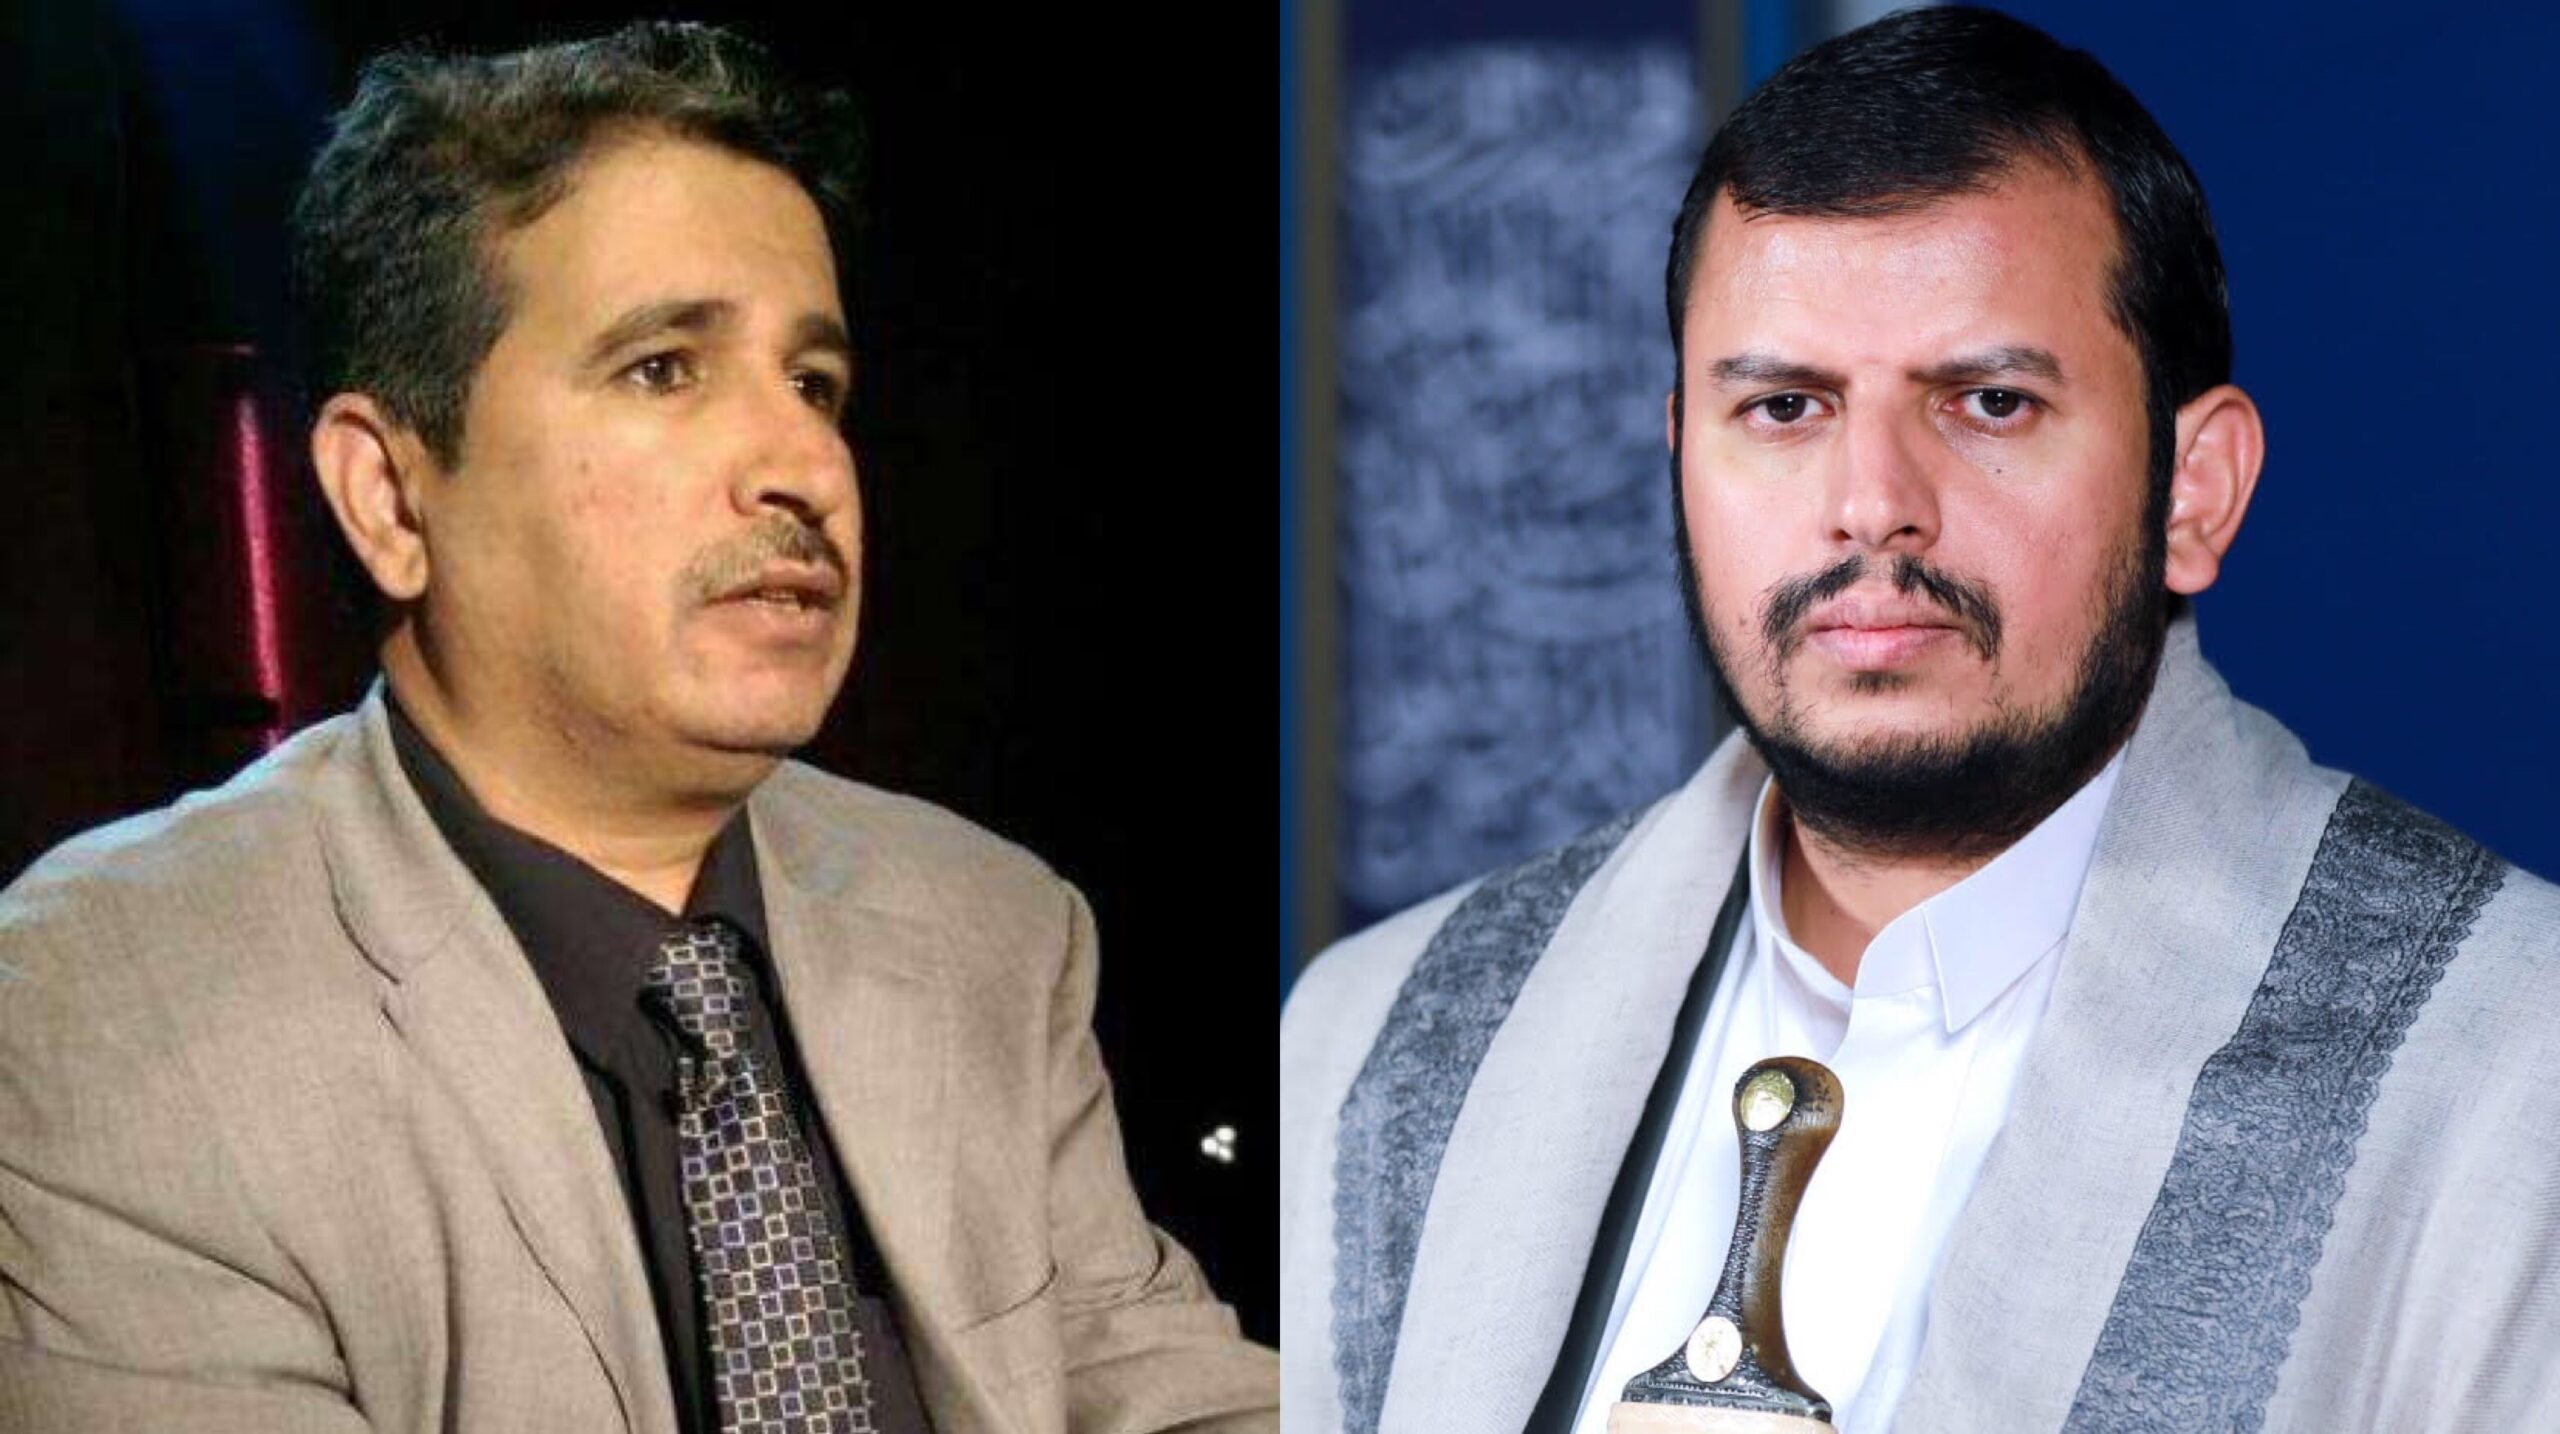 اخبار : اليمن اليوم برلماني يطالب عبدالملك الحوثي بإطلاق سراح قطران لإعادة الثقة في الدولة الآن